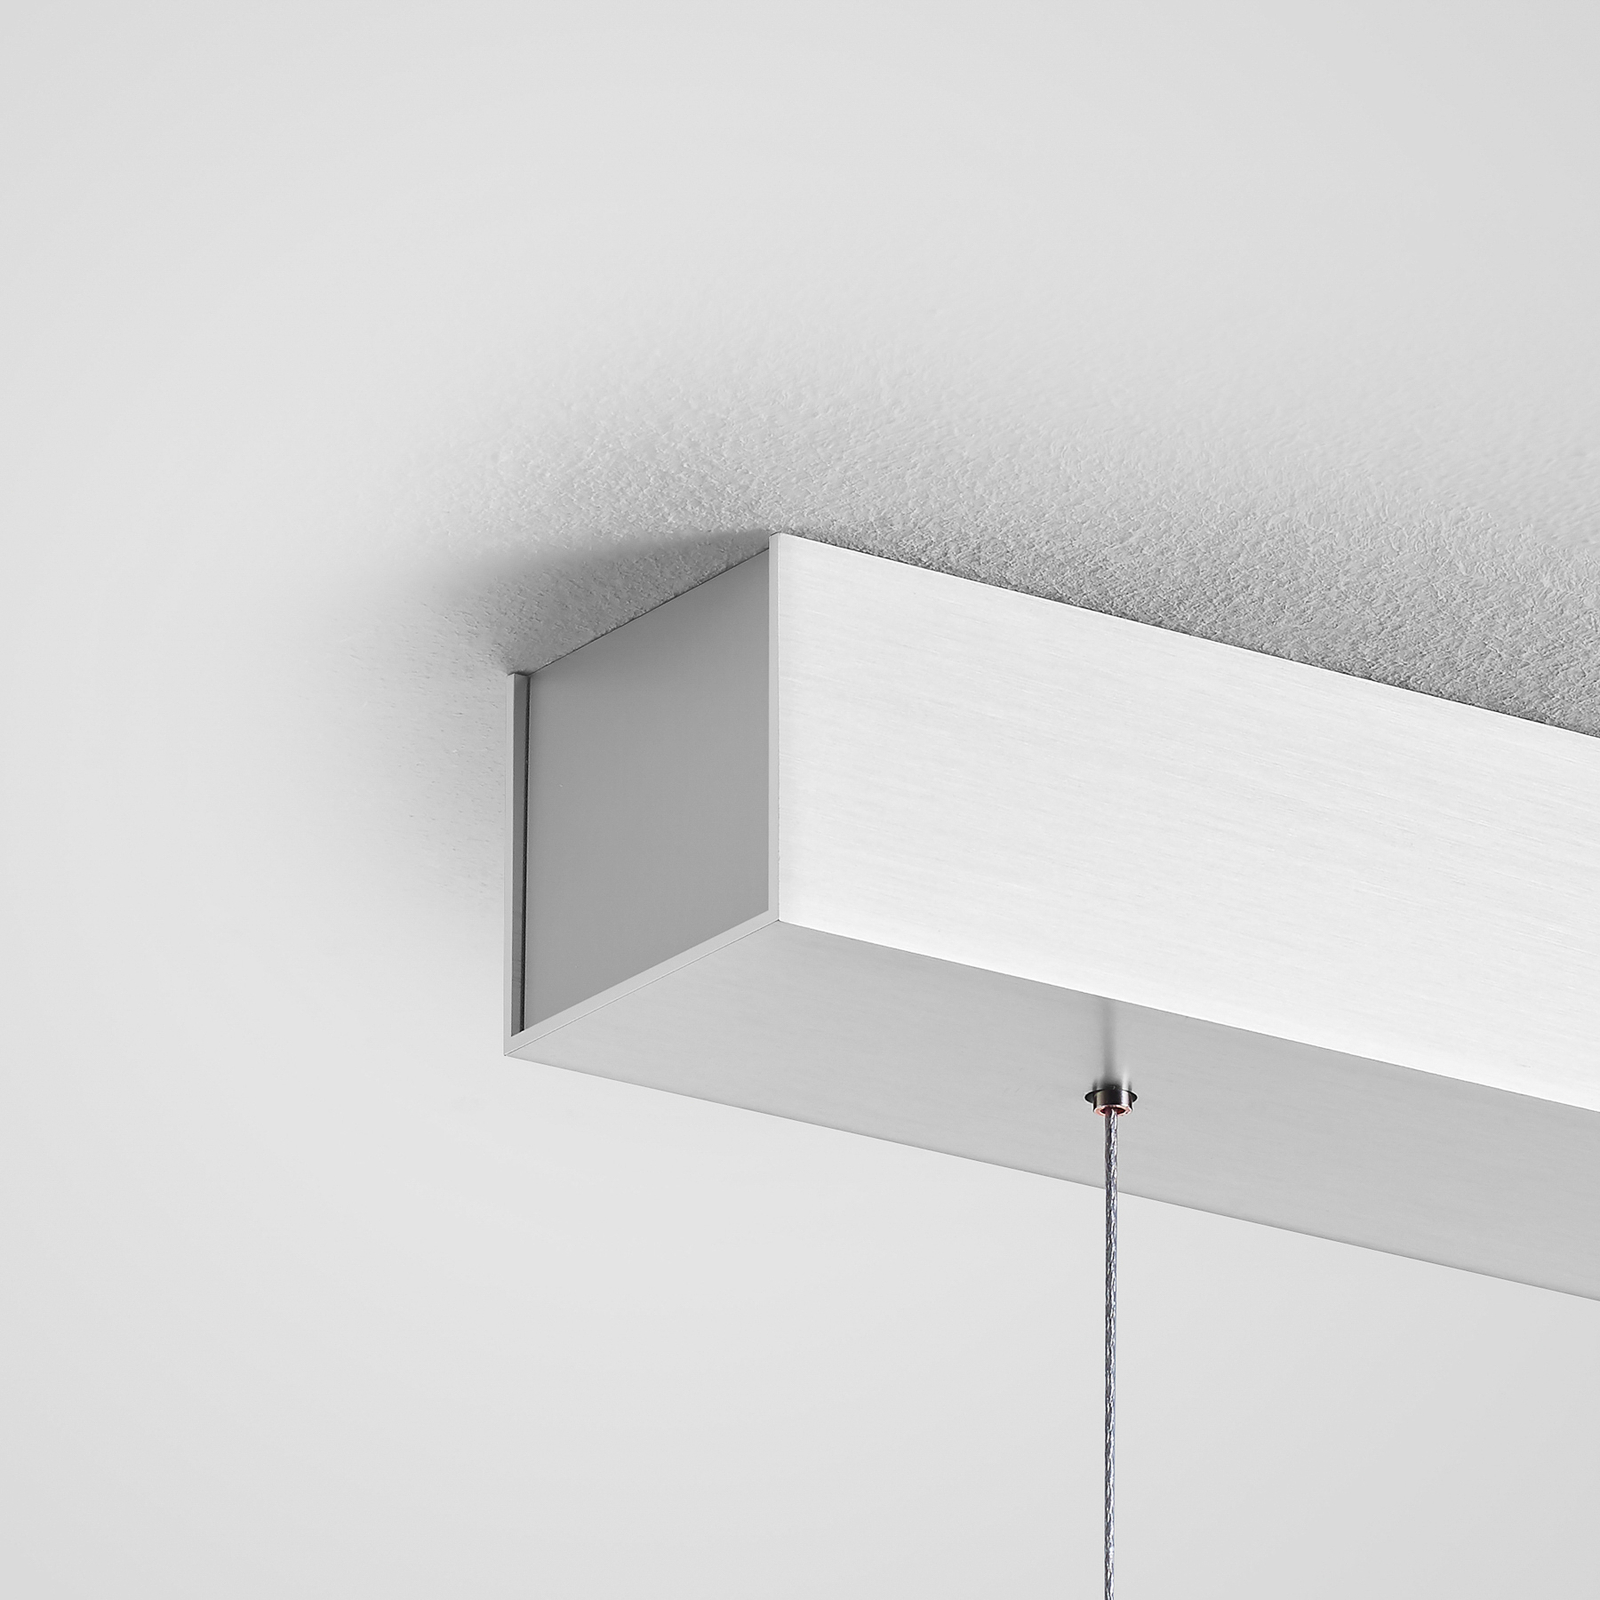 Quitani Lampă suspendată cu LED Keijo, nichel/rugină, 103 cm